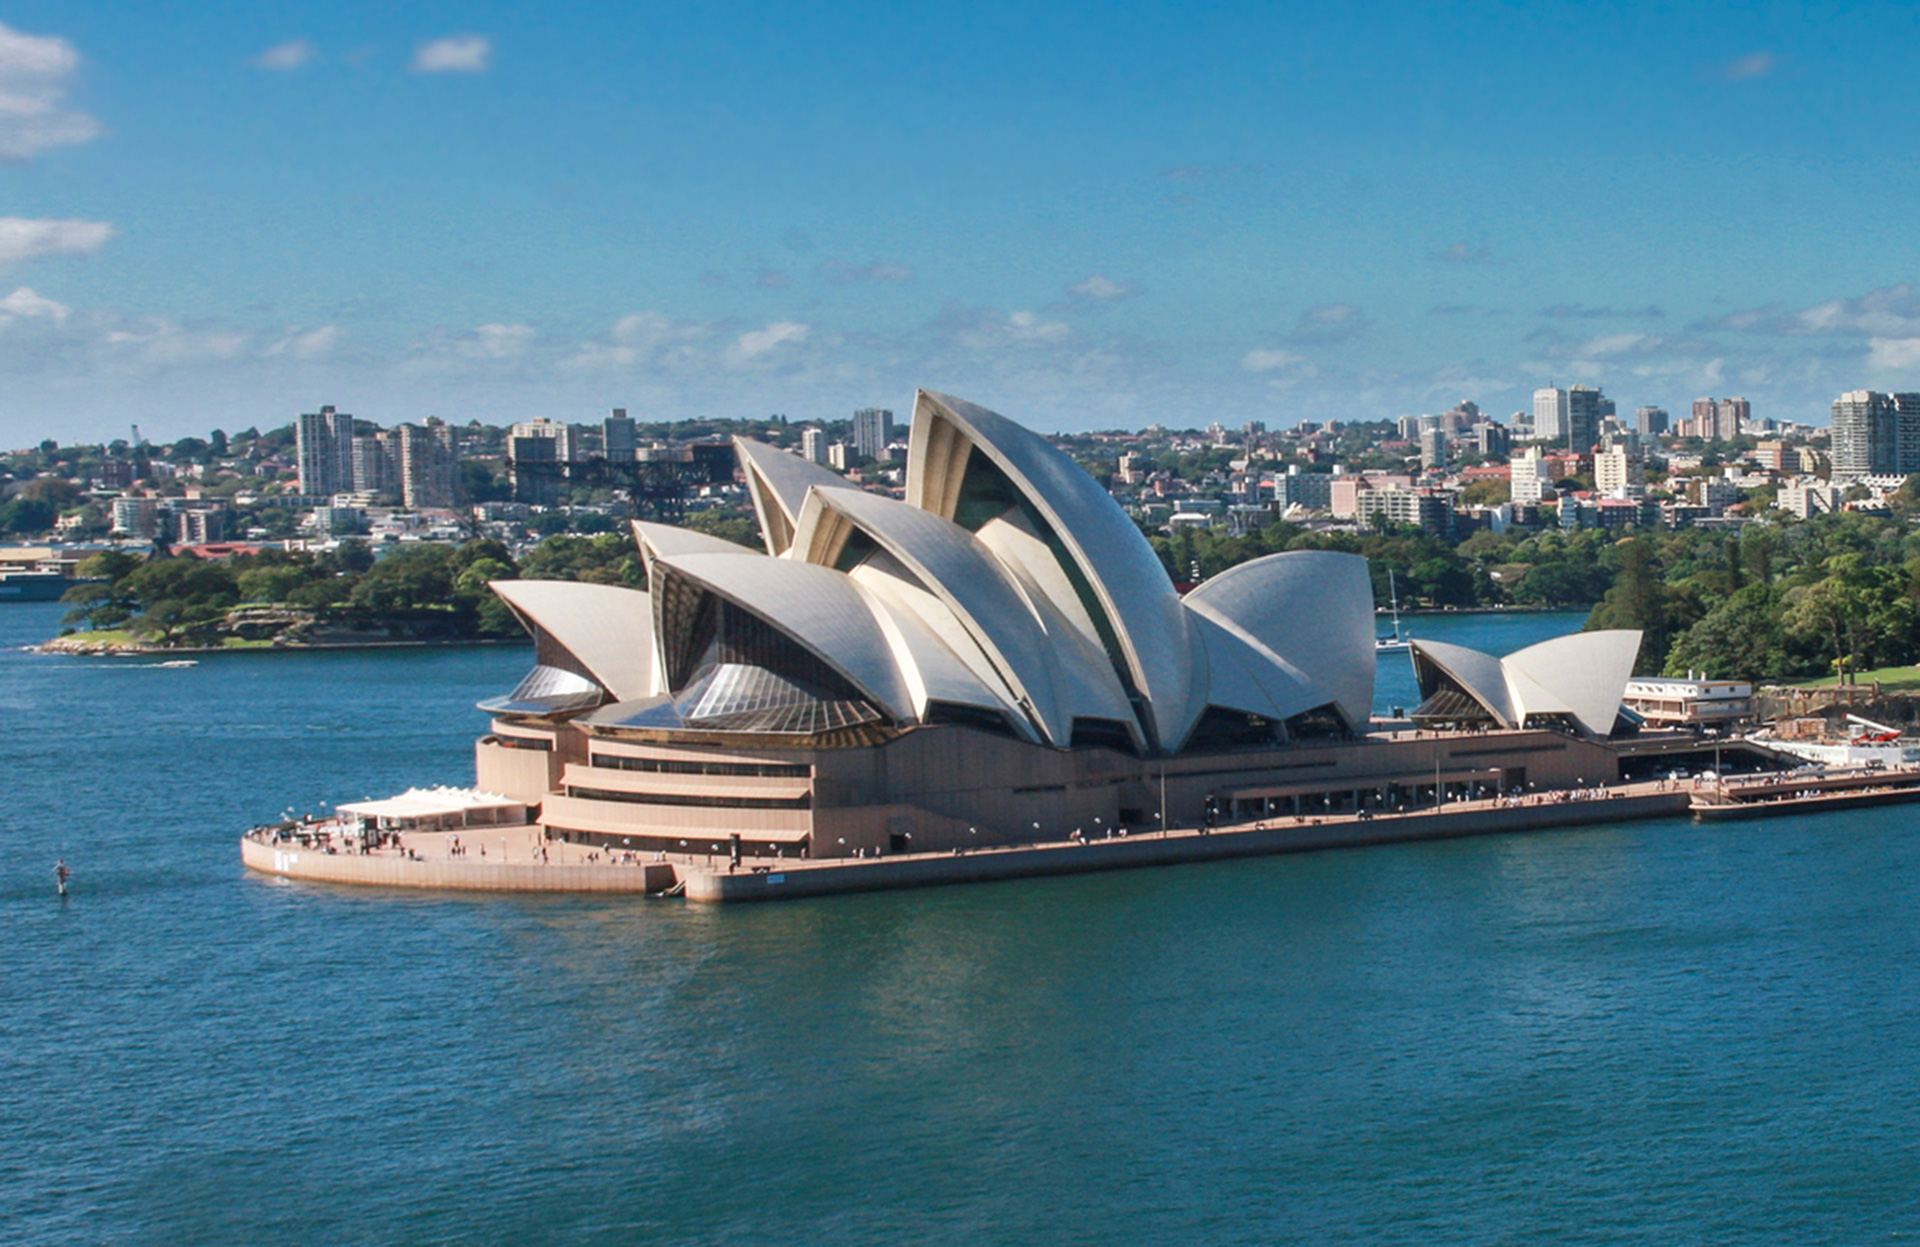 Image of the Sydney Opera House